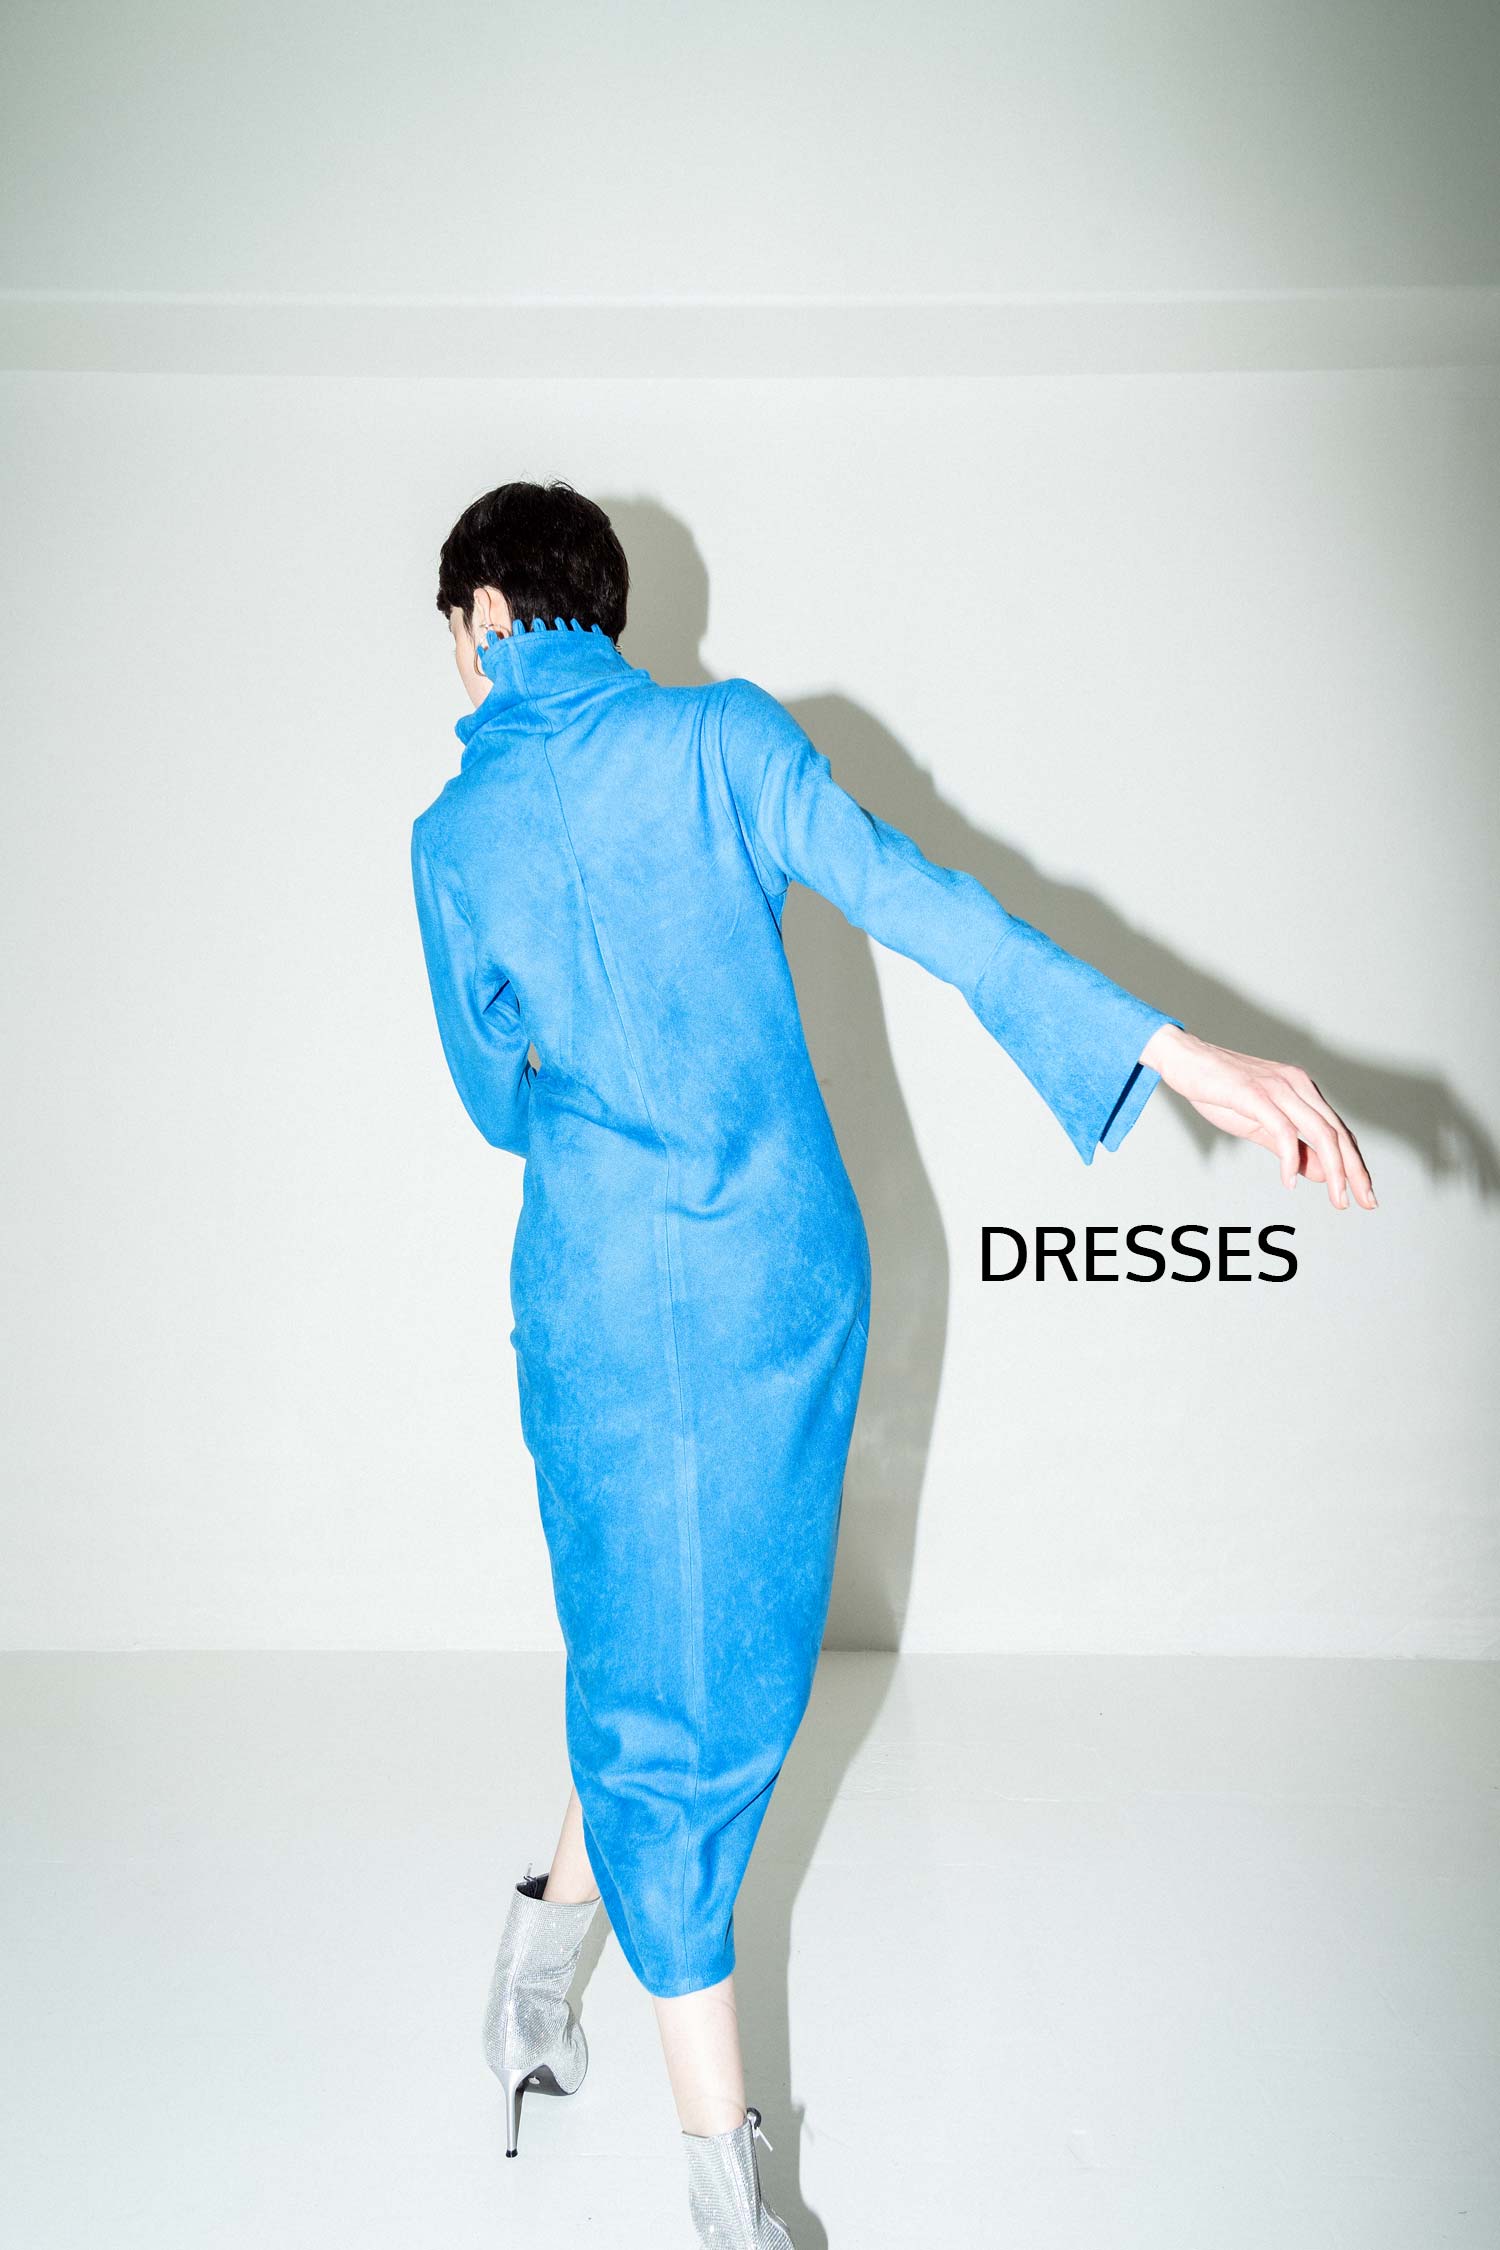 dresses-1500x2250-h